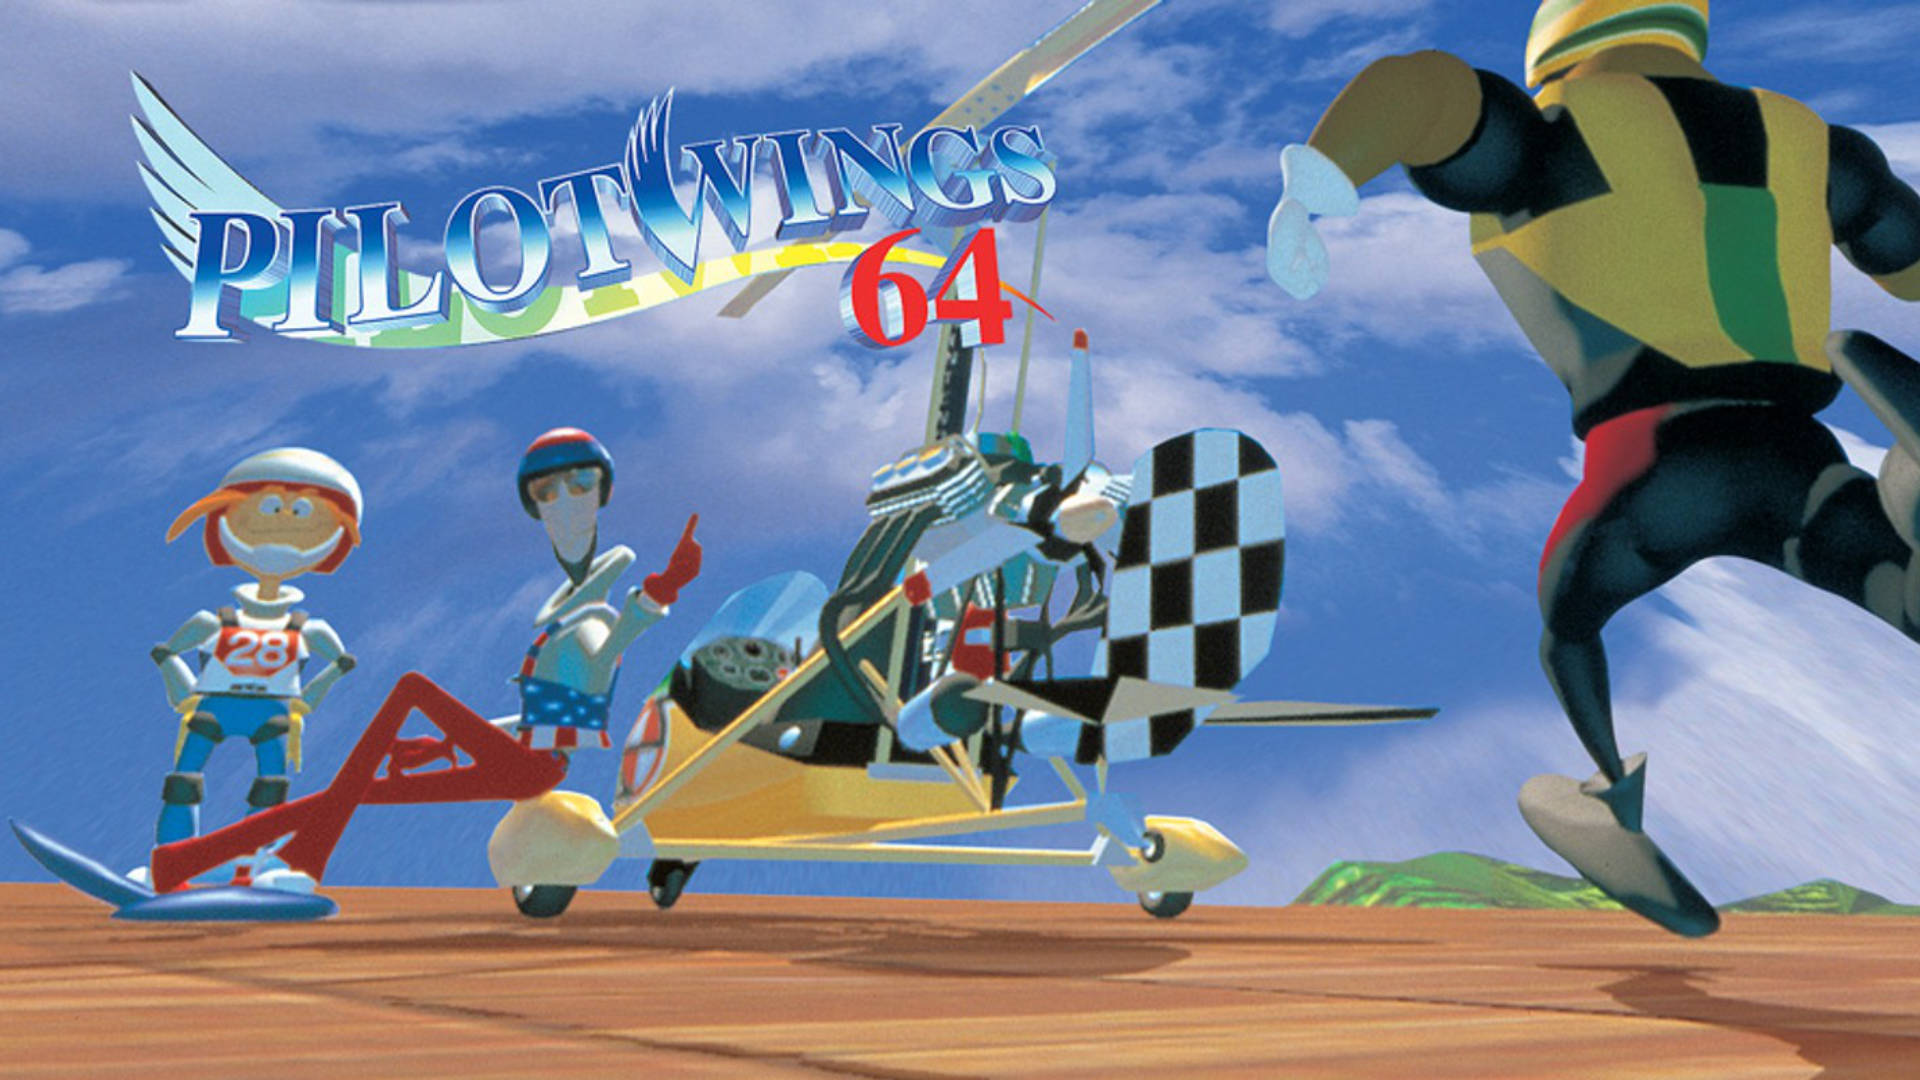 Pilotwings 64: Pilotenwahnsinn auf der Nintendo Switch